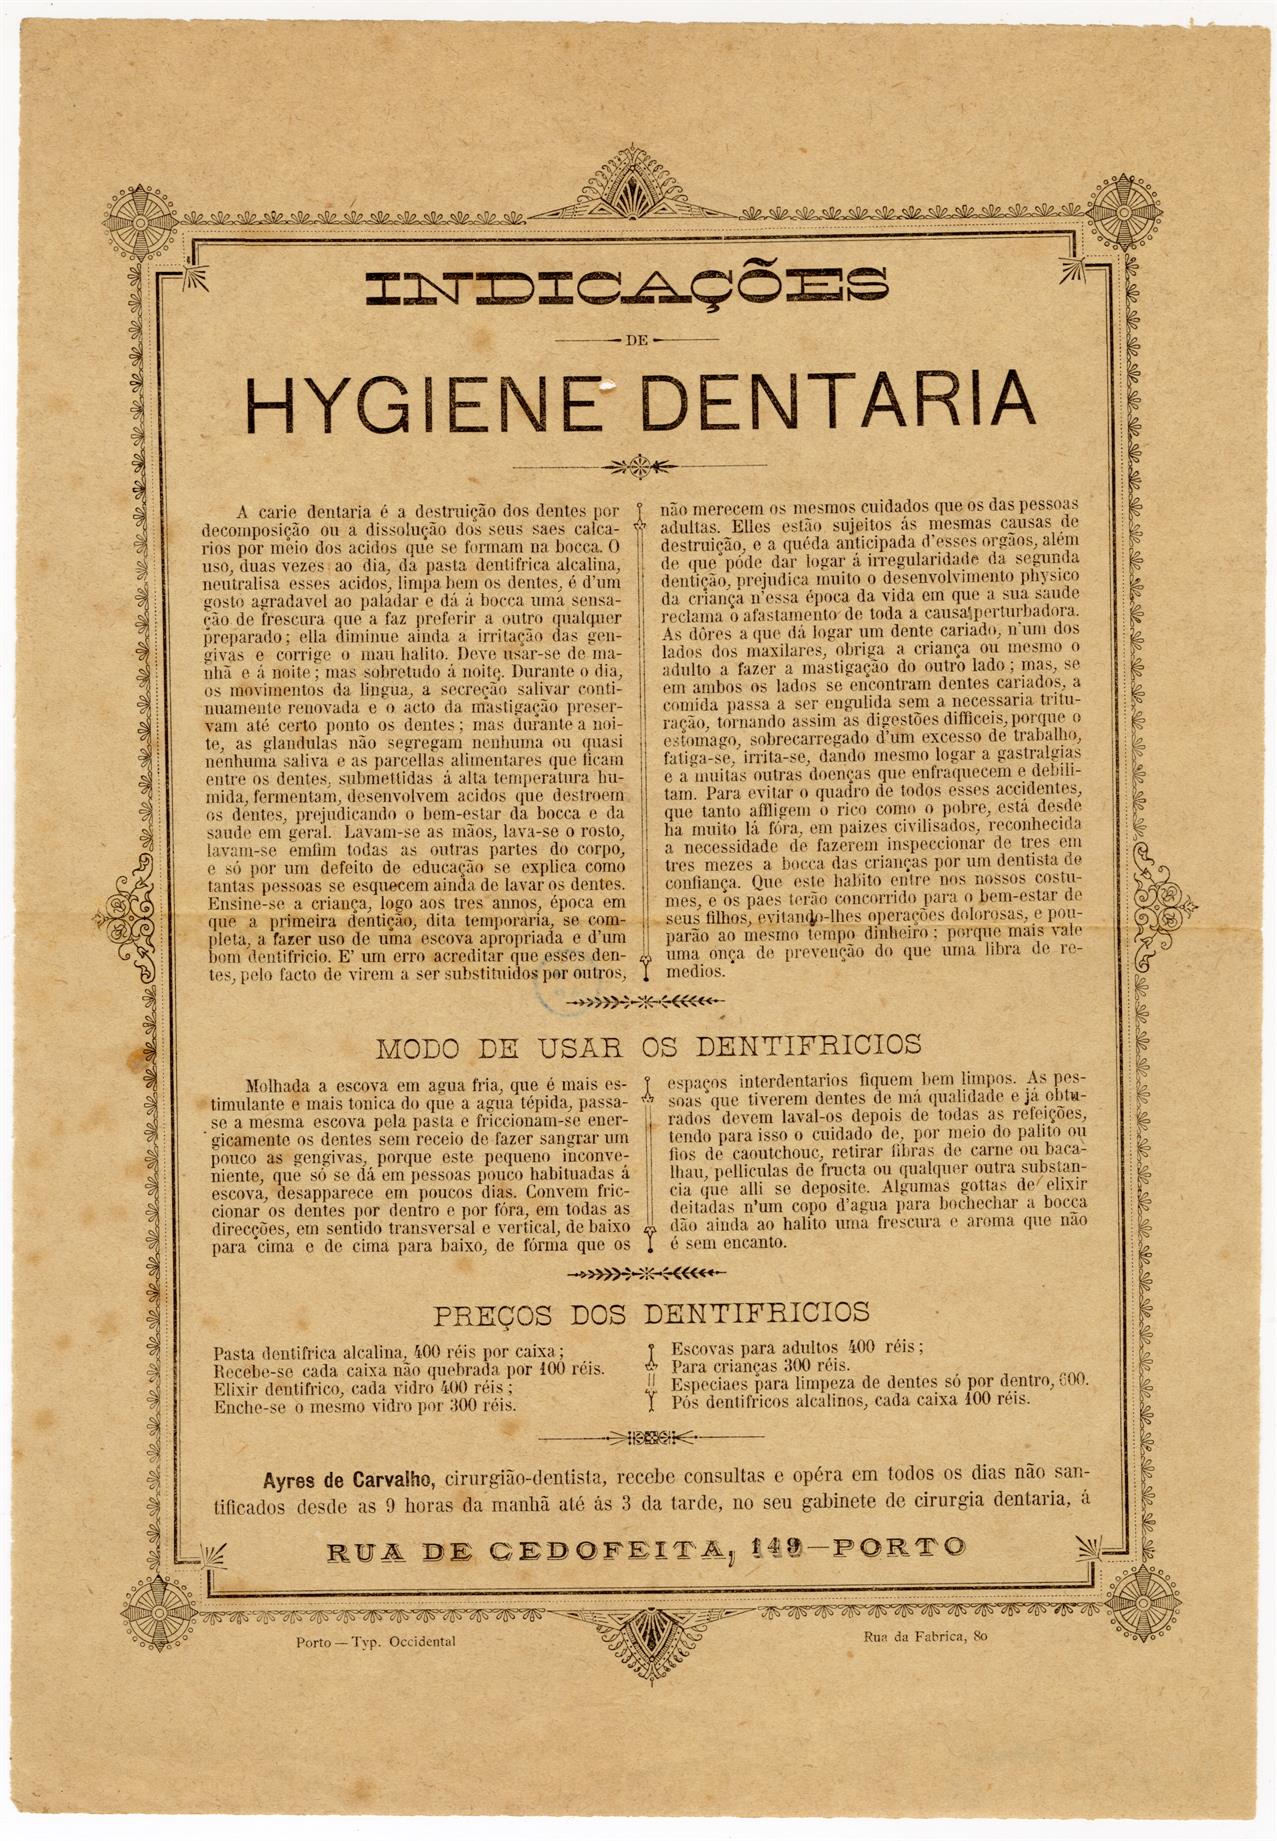 Indicações de higiene dentária